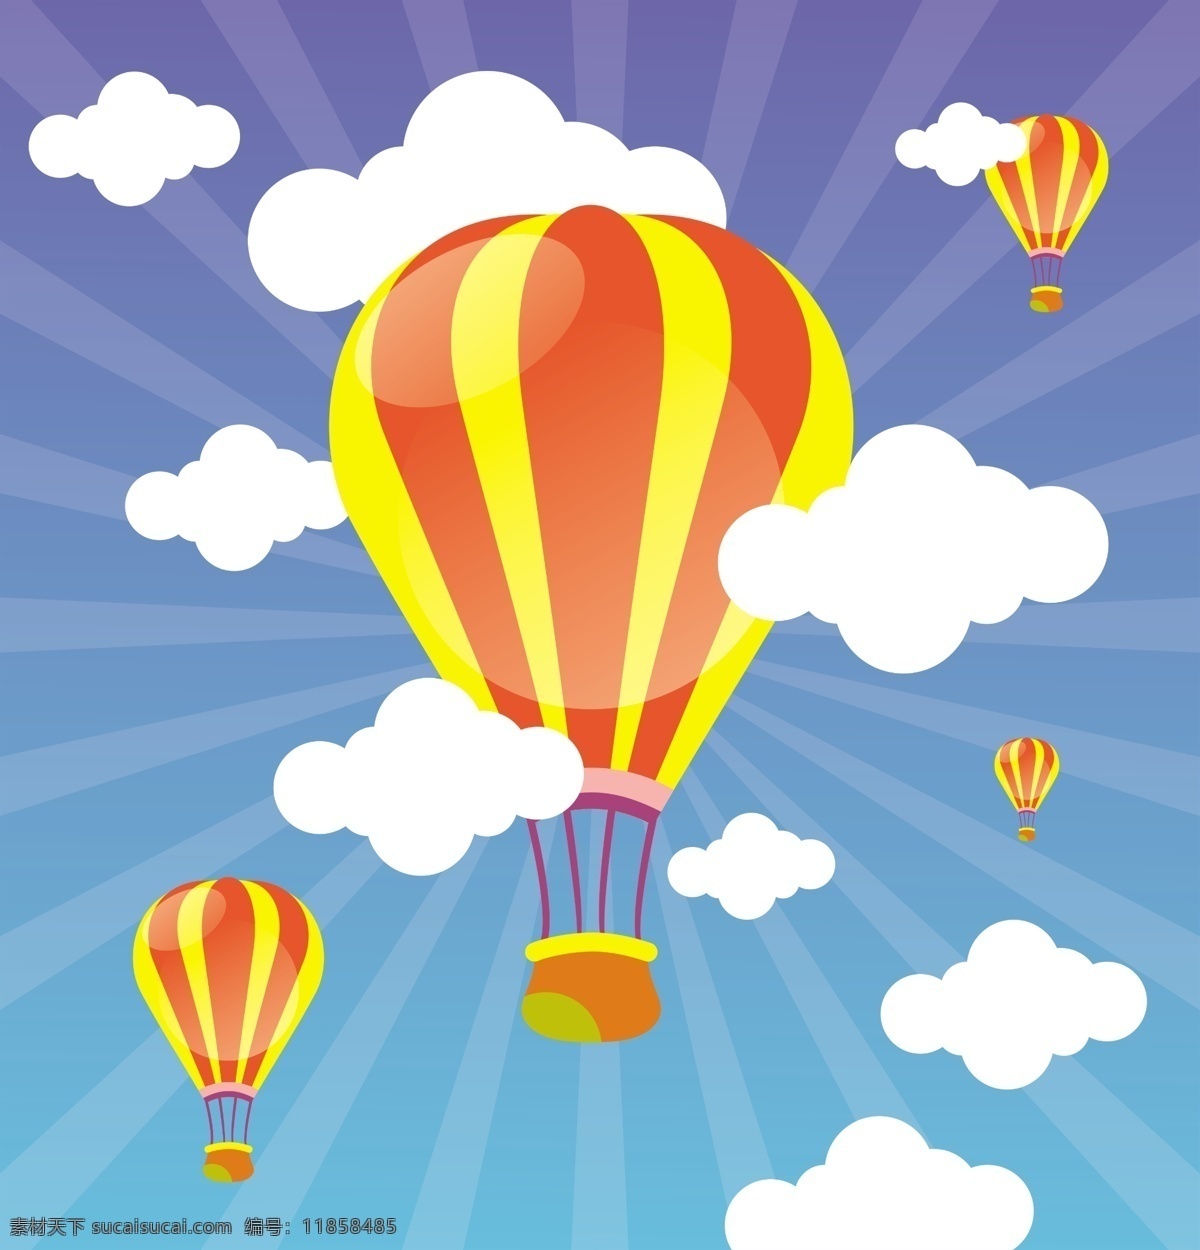 彩色 热气球 云朵 背景 图 彩色热气球 矢量图